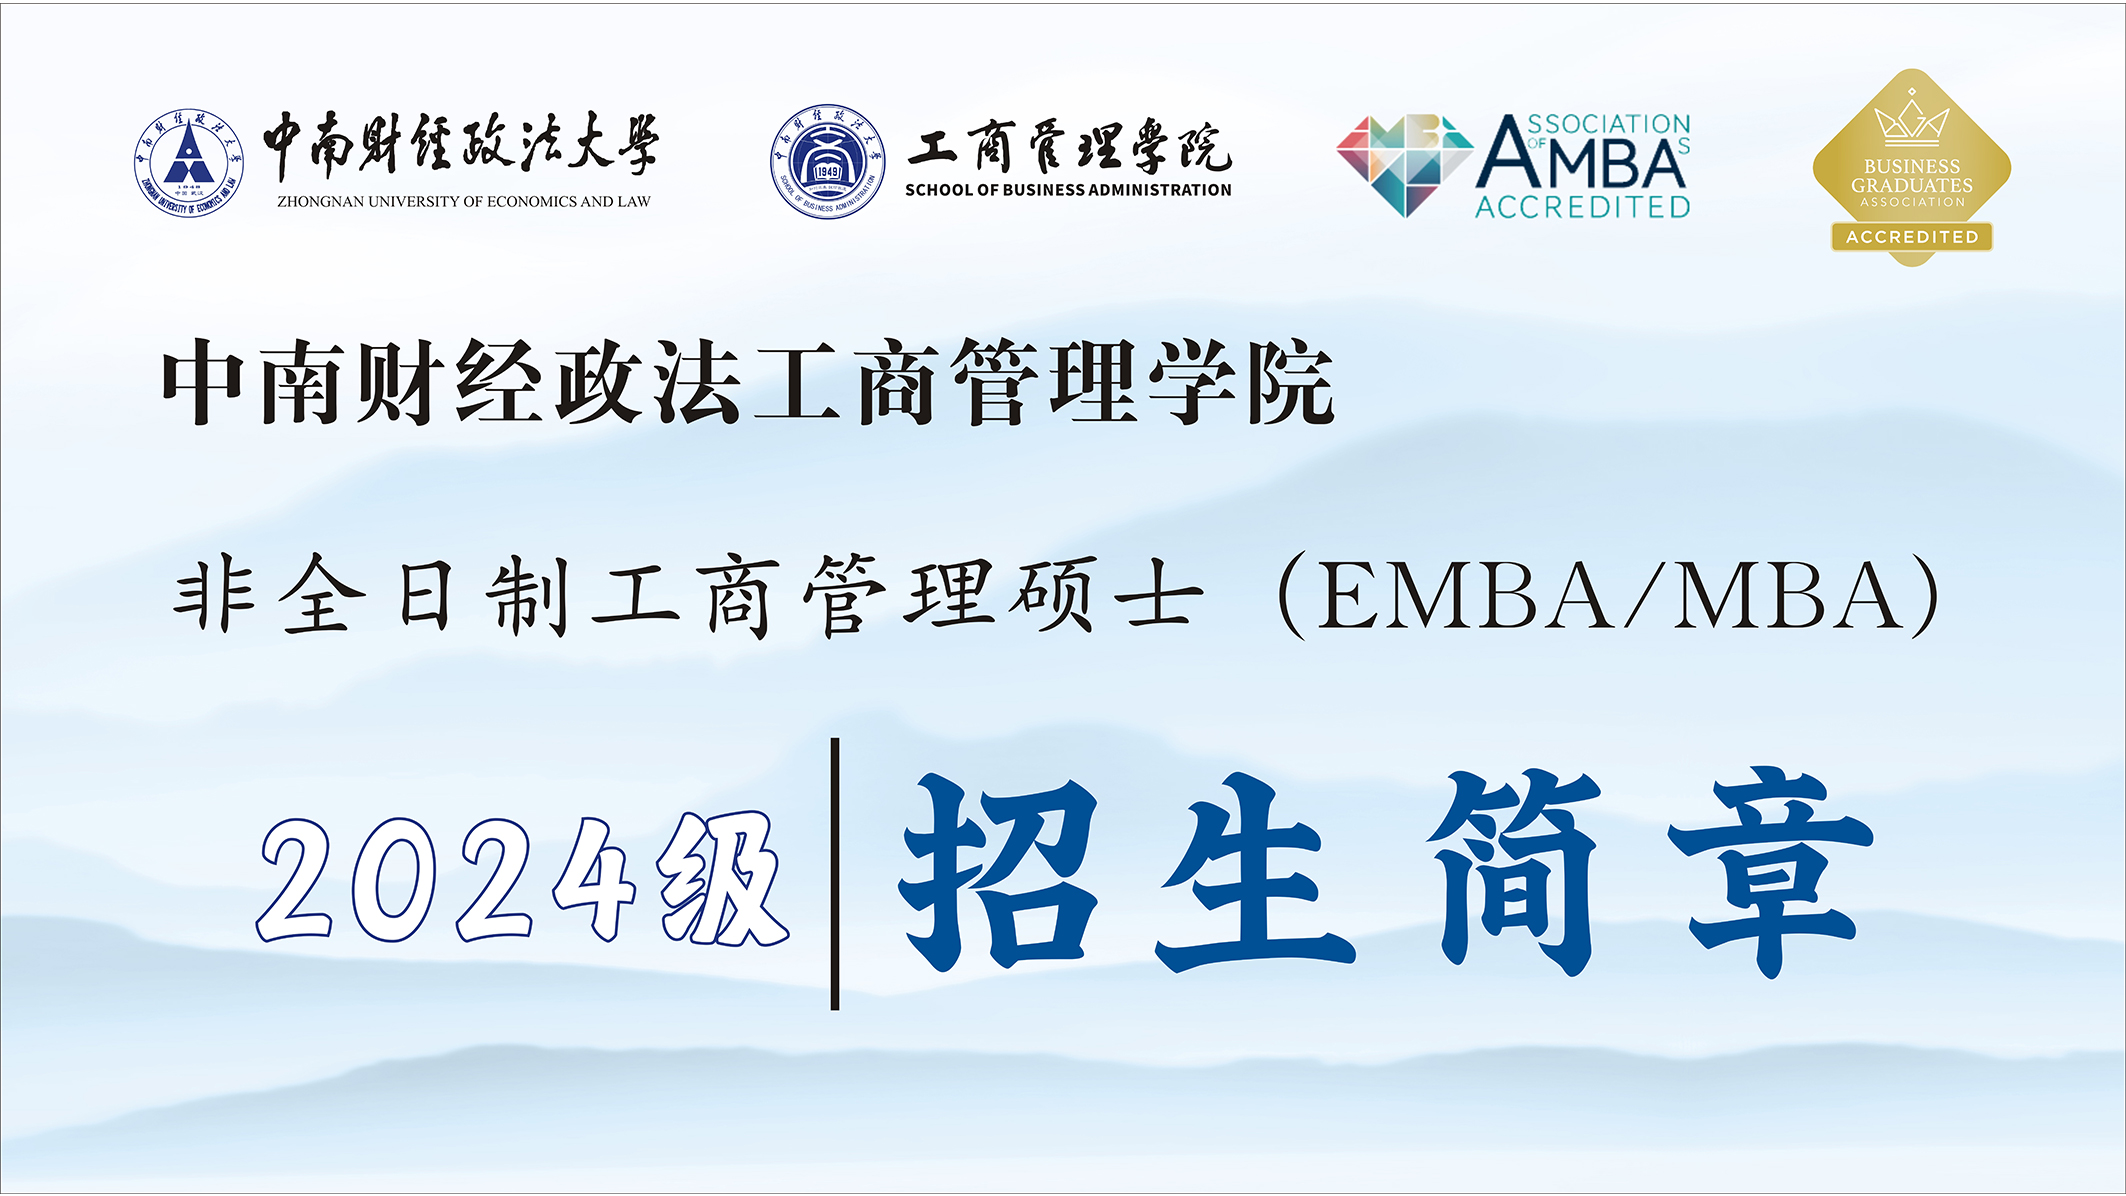 中南财经政法大学EMBA/MBA招生进行中